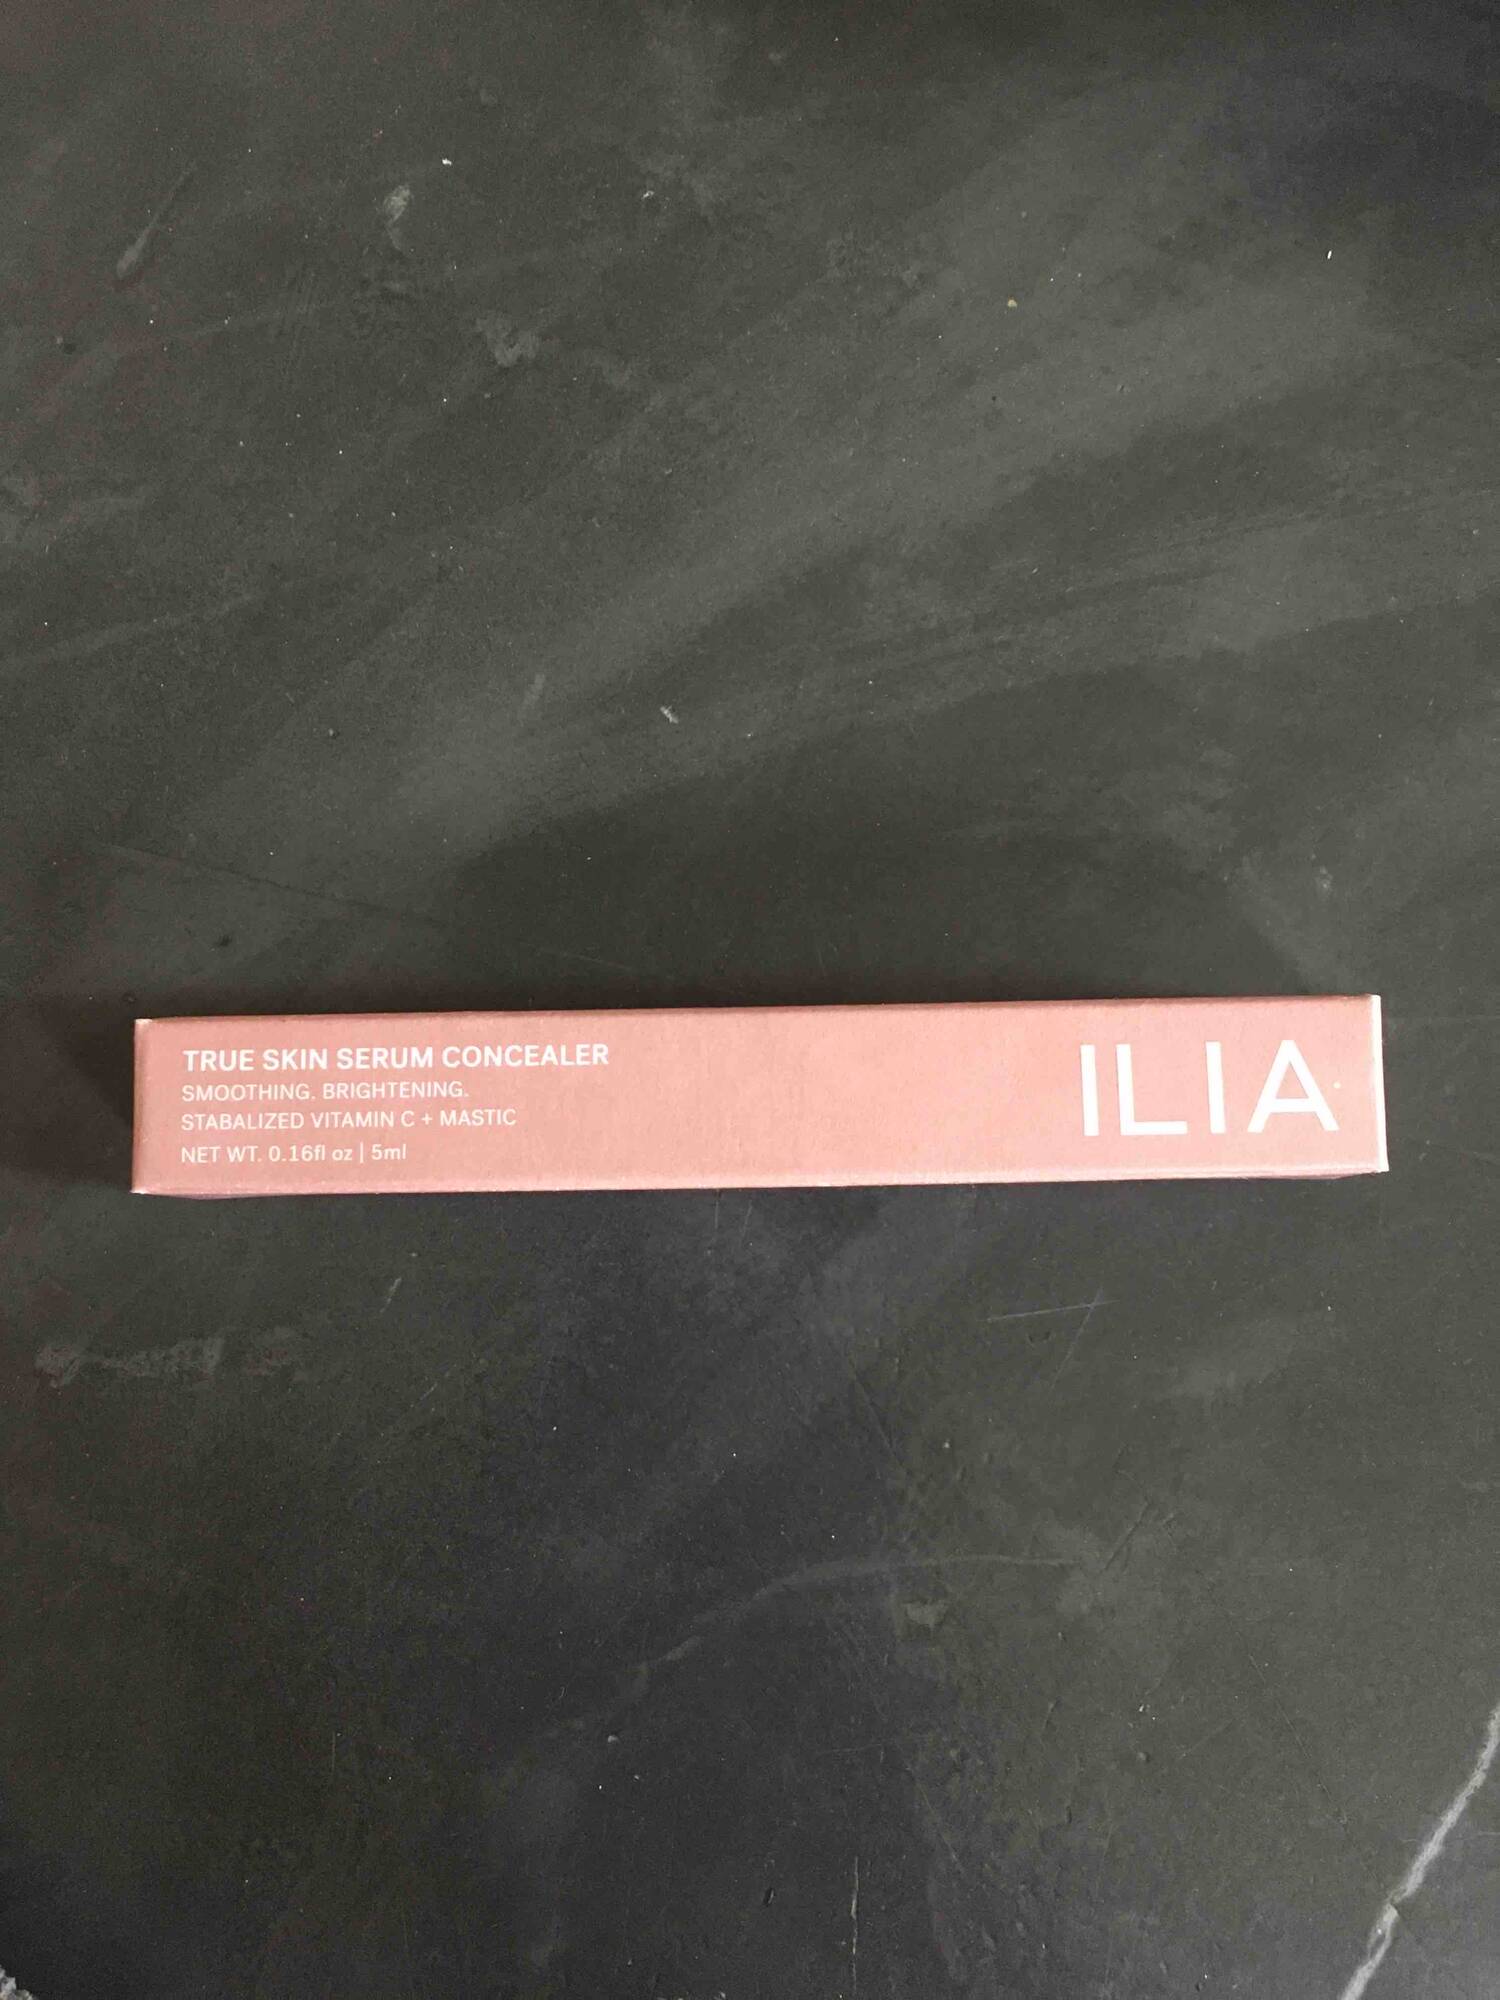 ILIA - True skin serum concealer